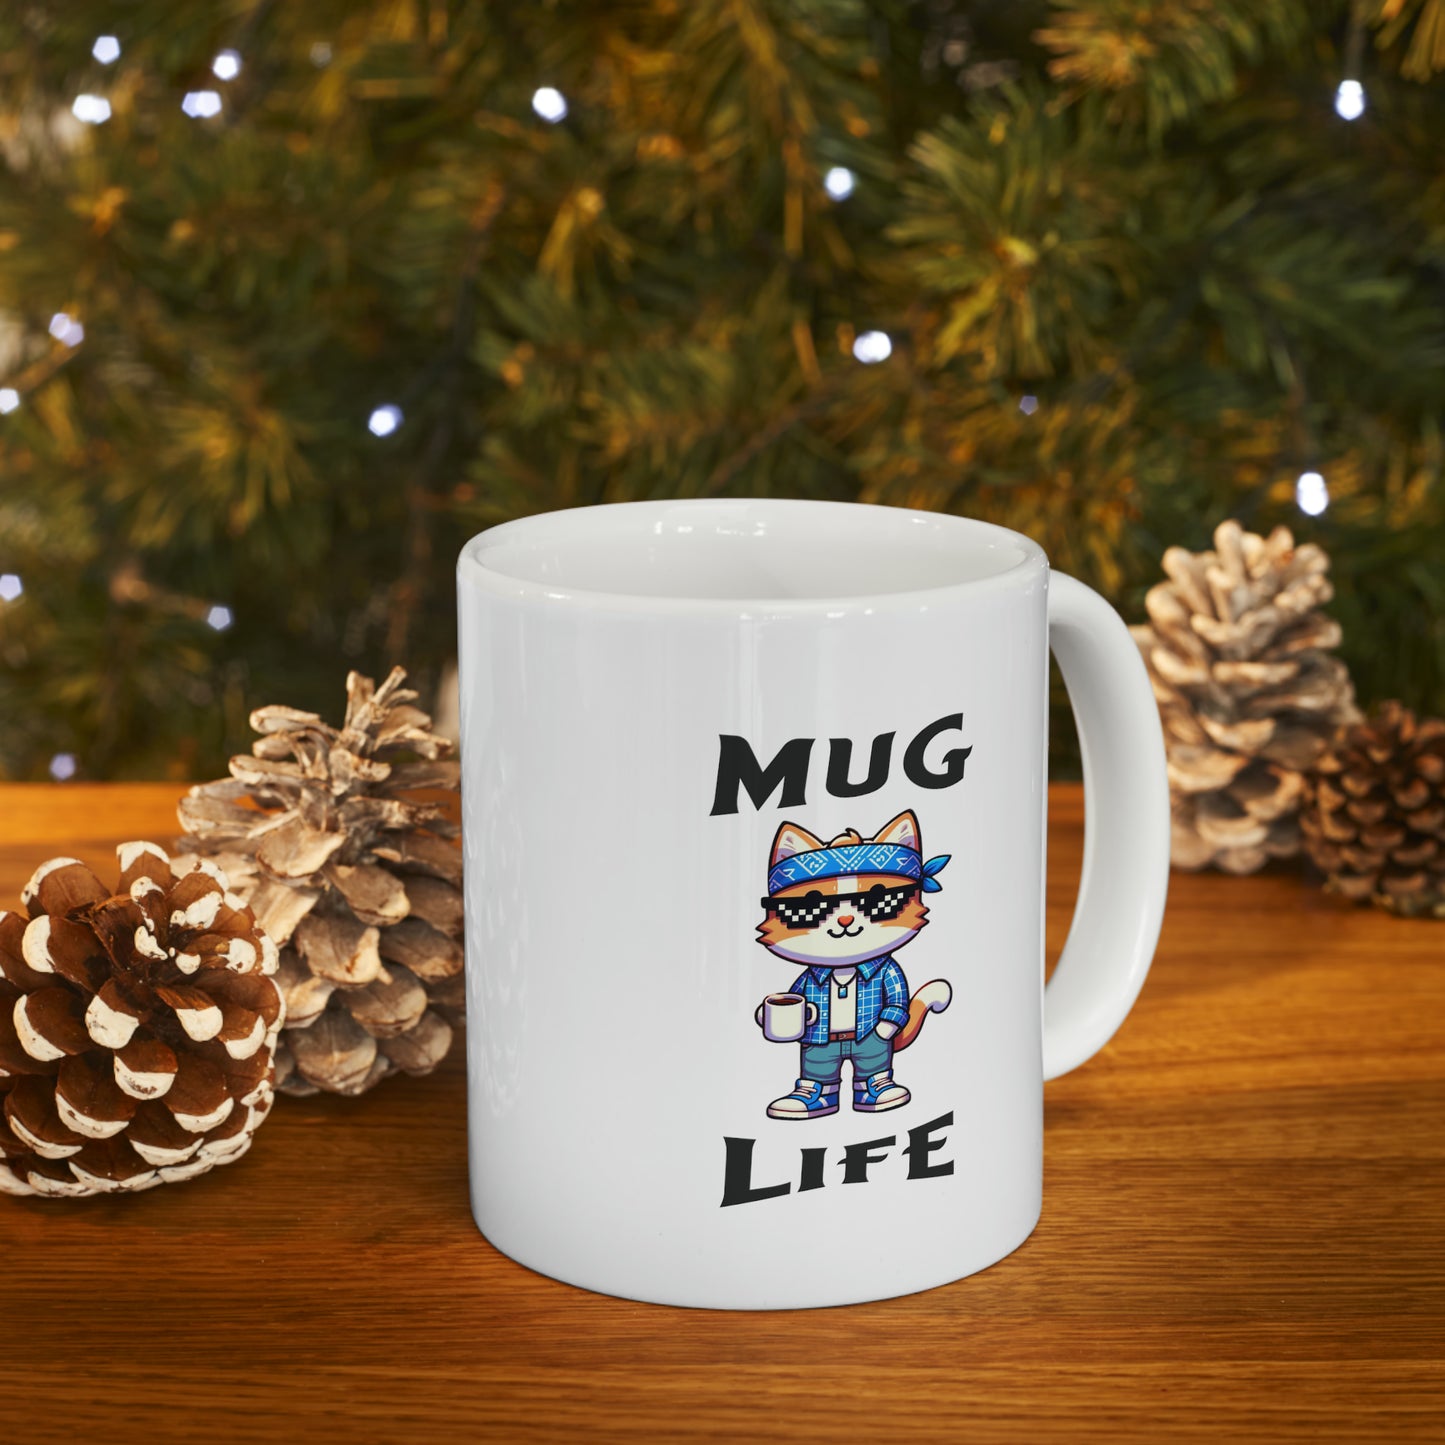 Mug Life Ceramic Mug